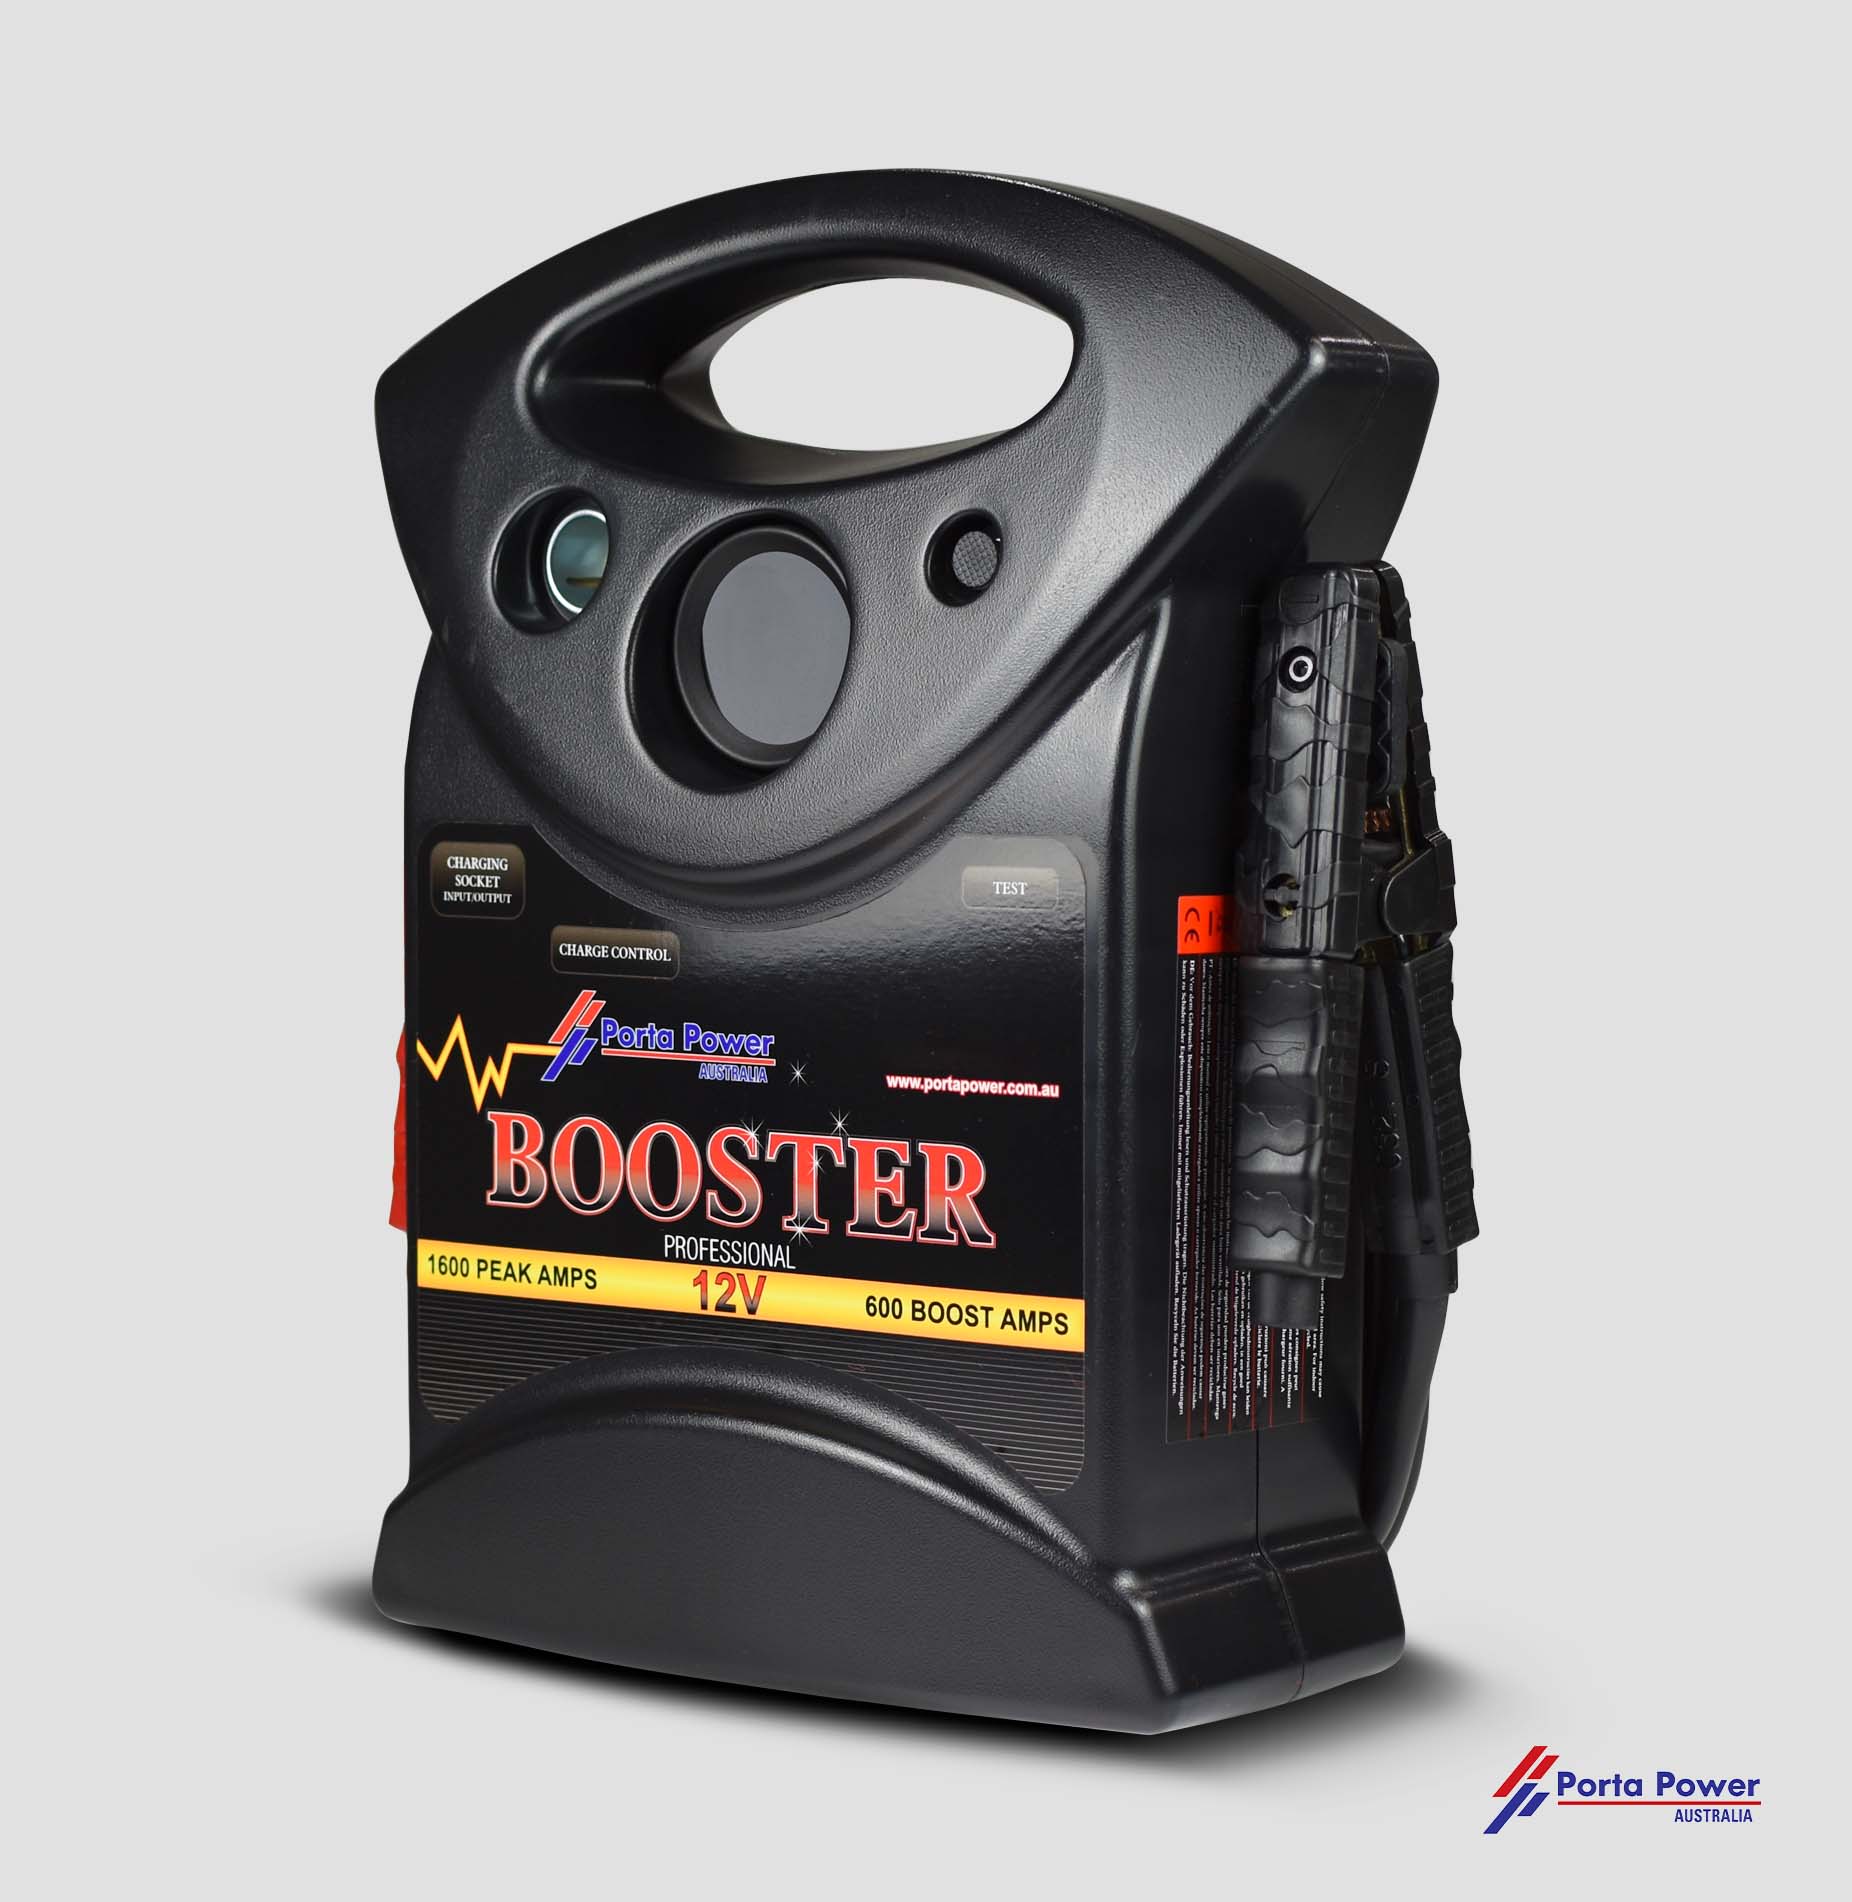 LS 3500 – 12v Booster – 1600 Peak Amps